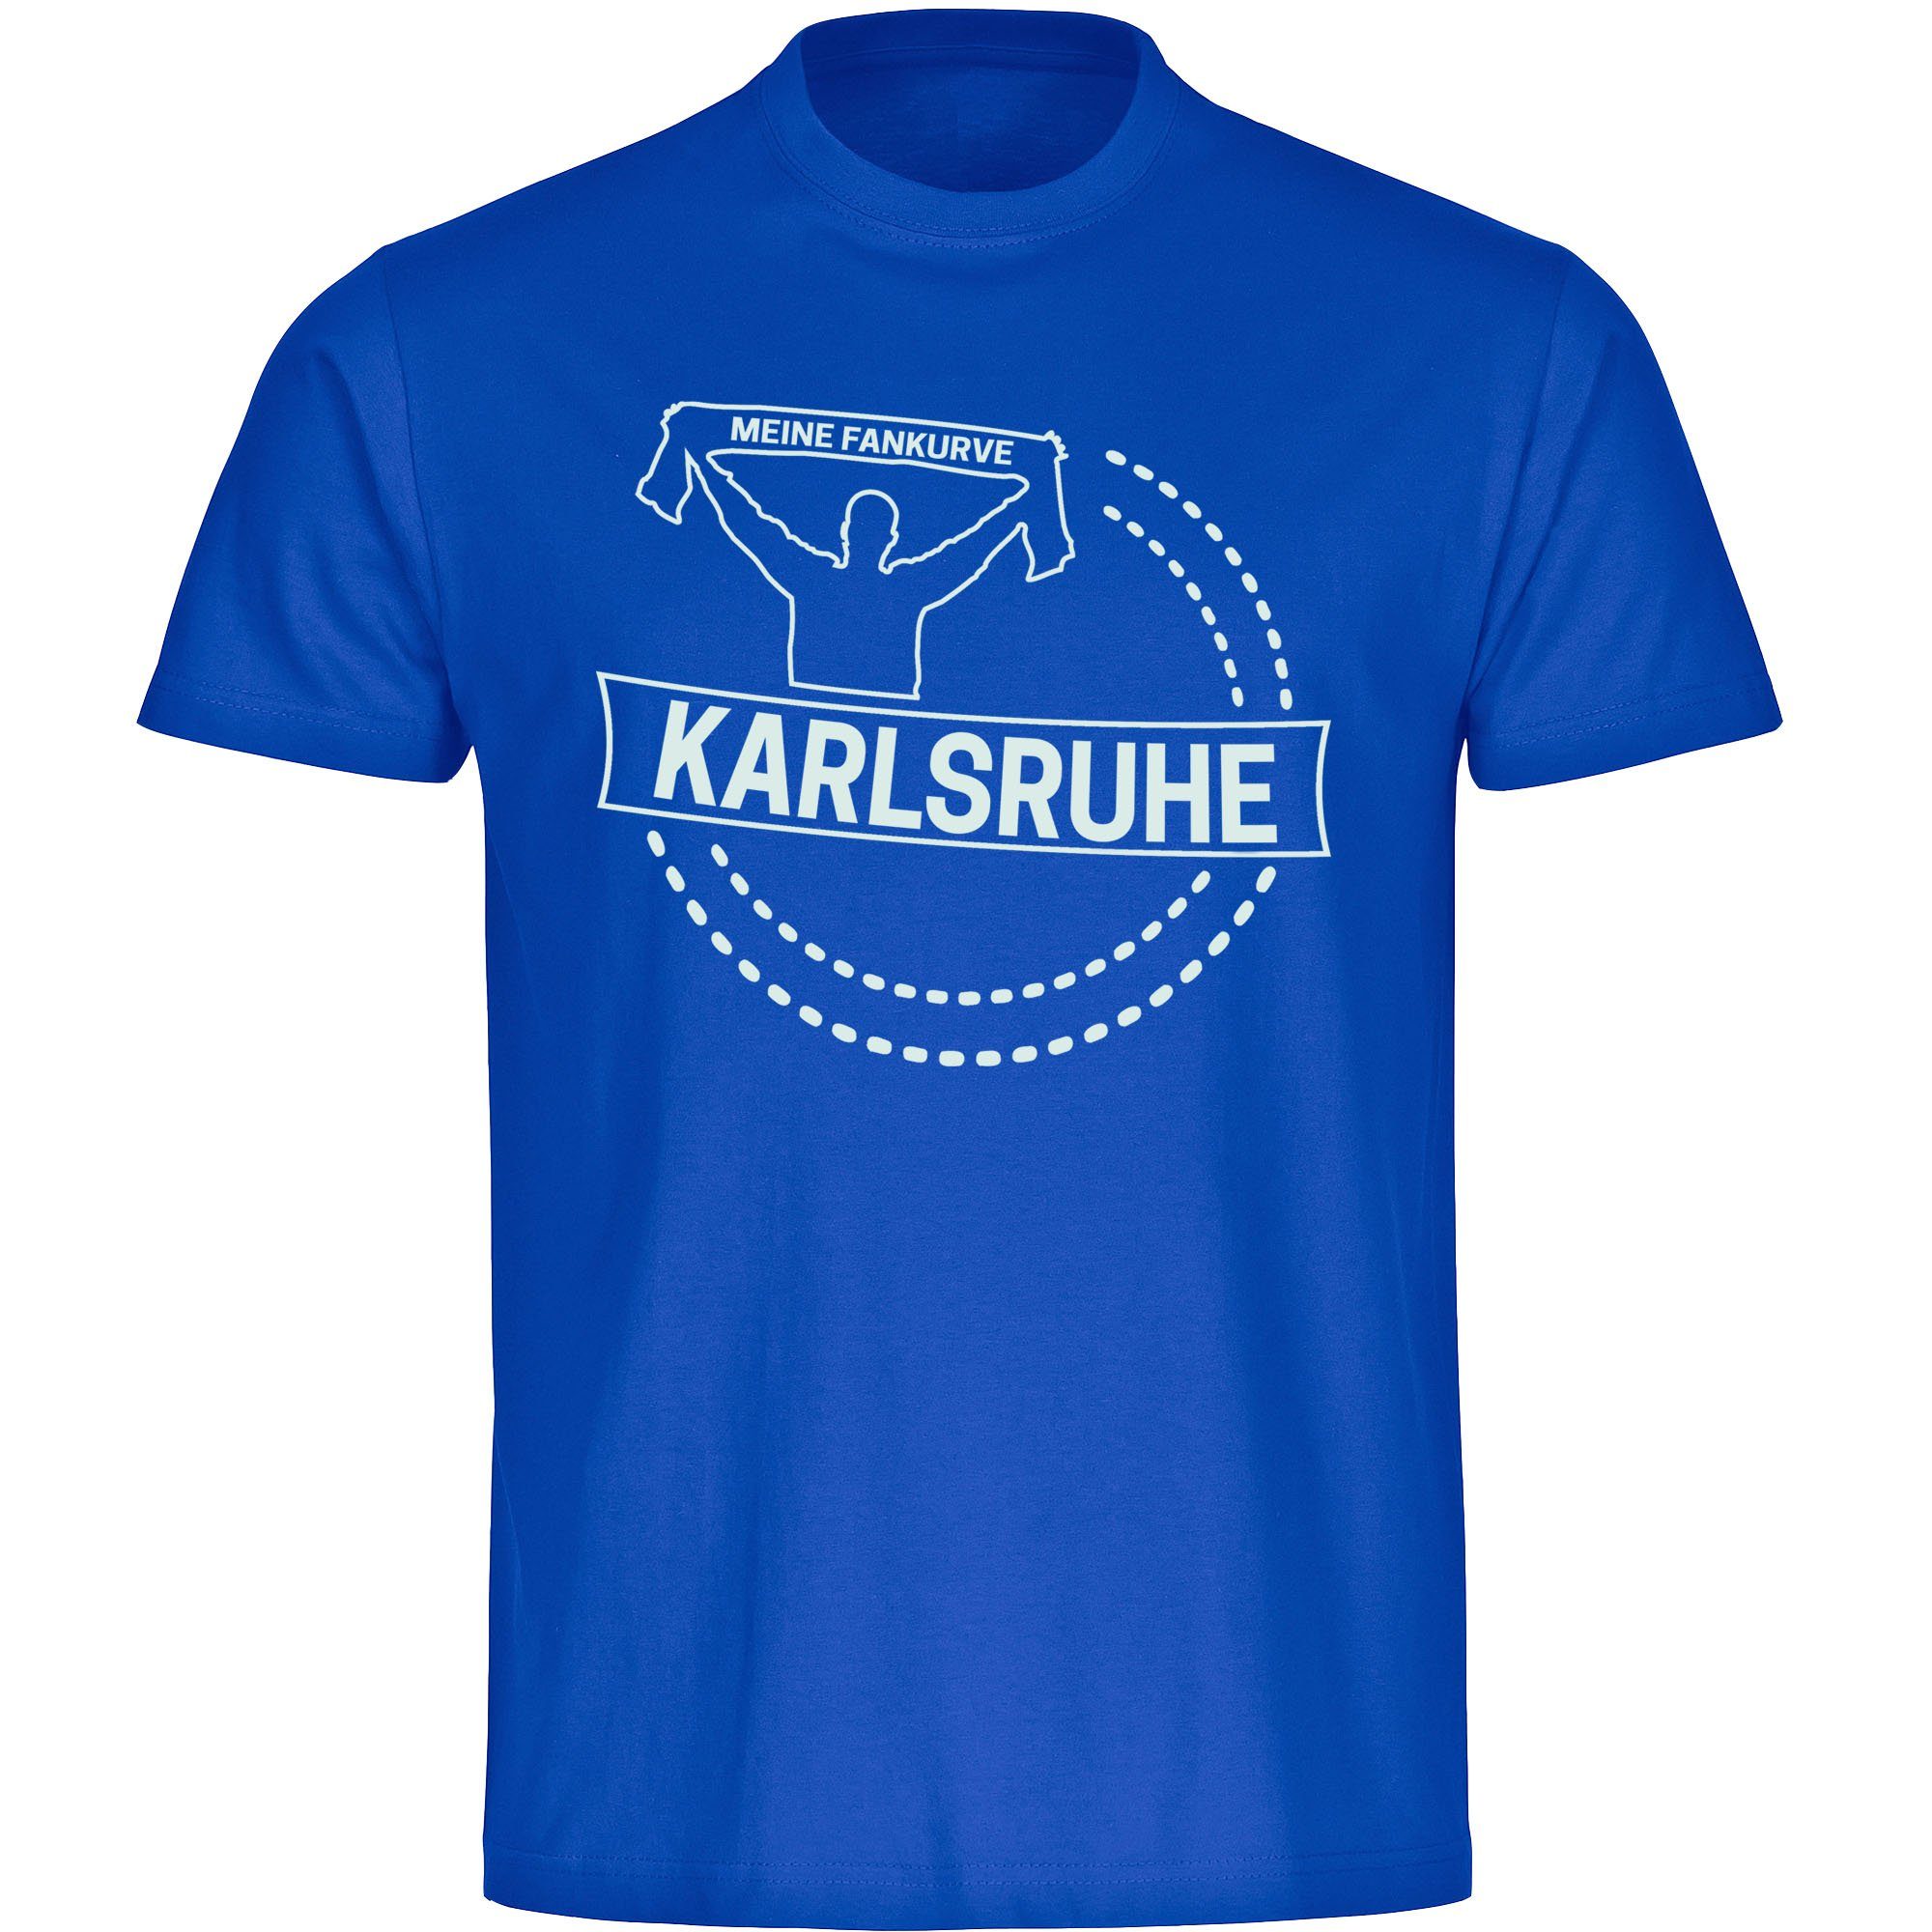 multifanshop T-Shirt Kinder Karlsruhe - Meine Fankurve - Boy Girl